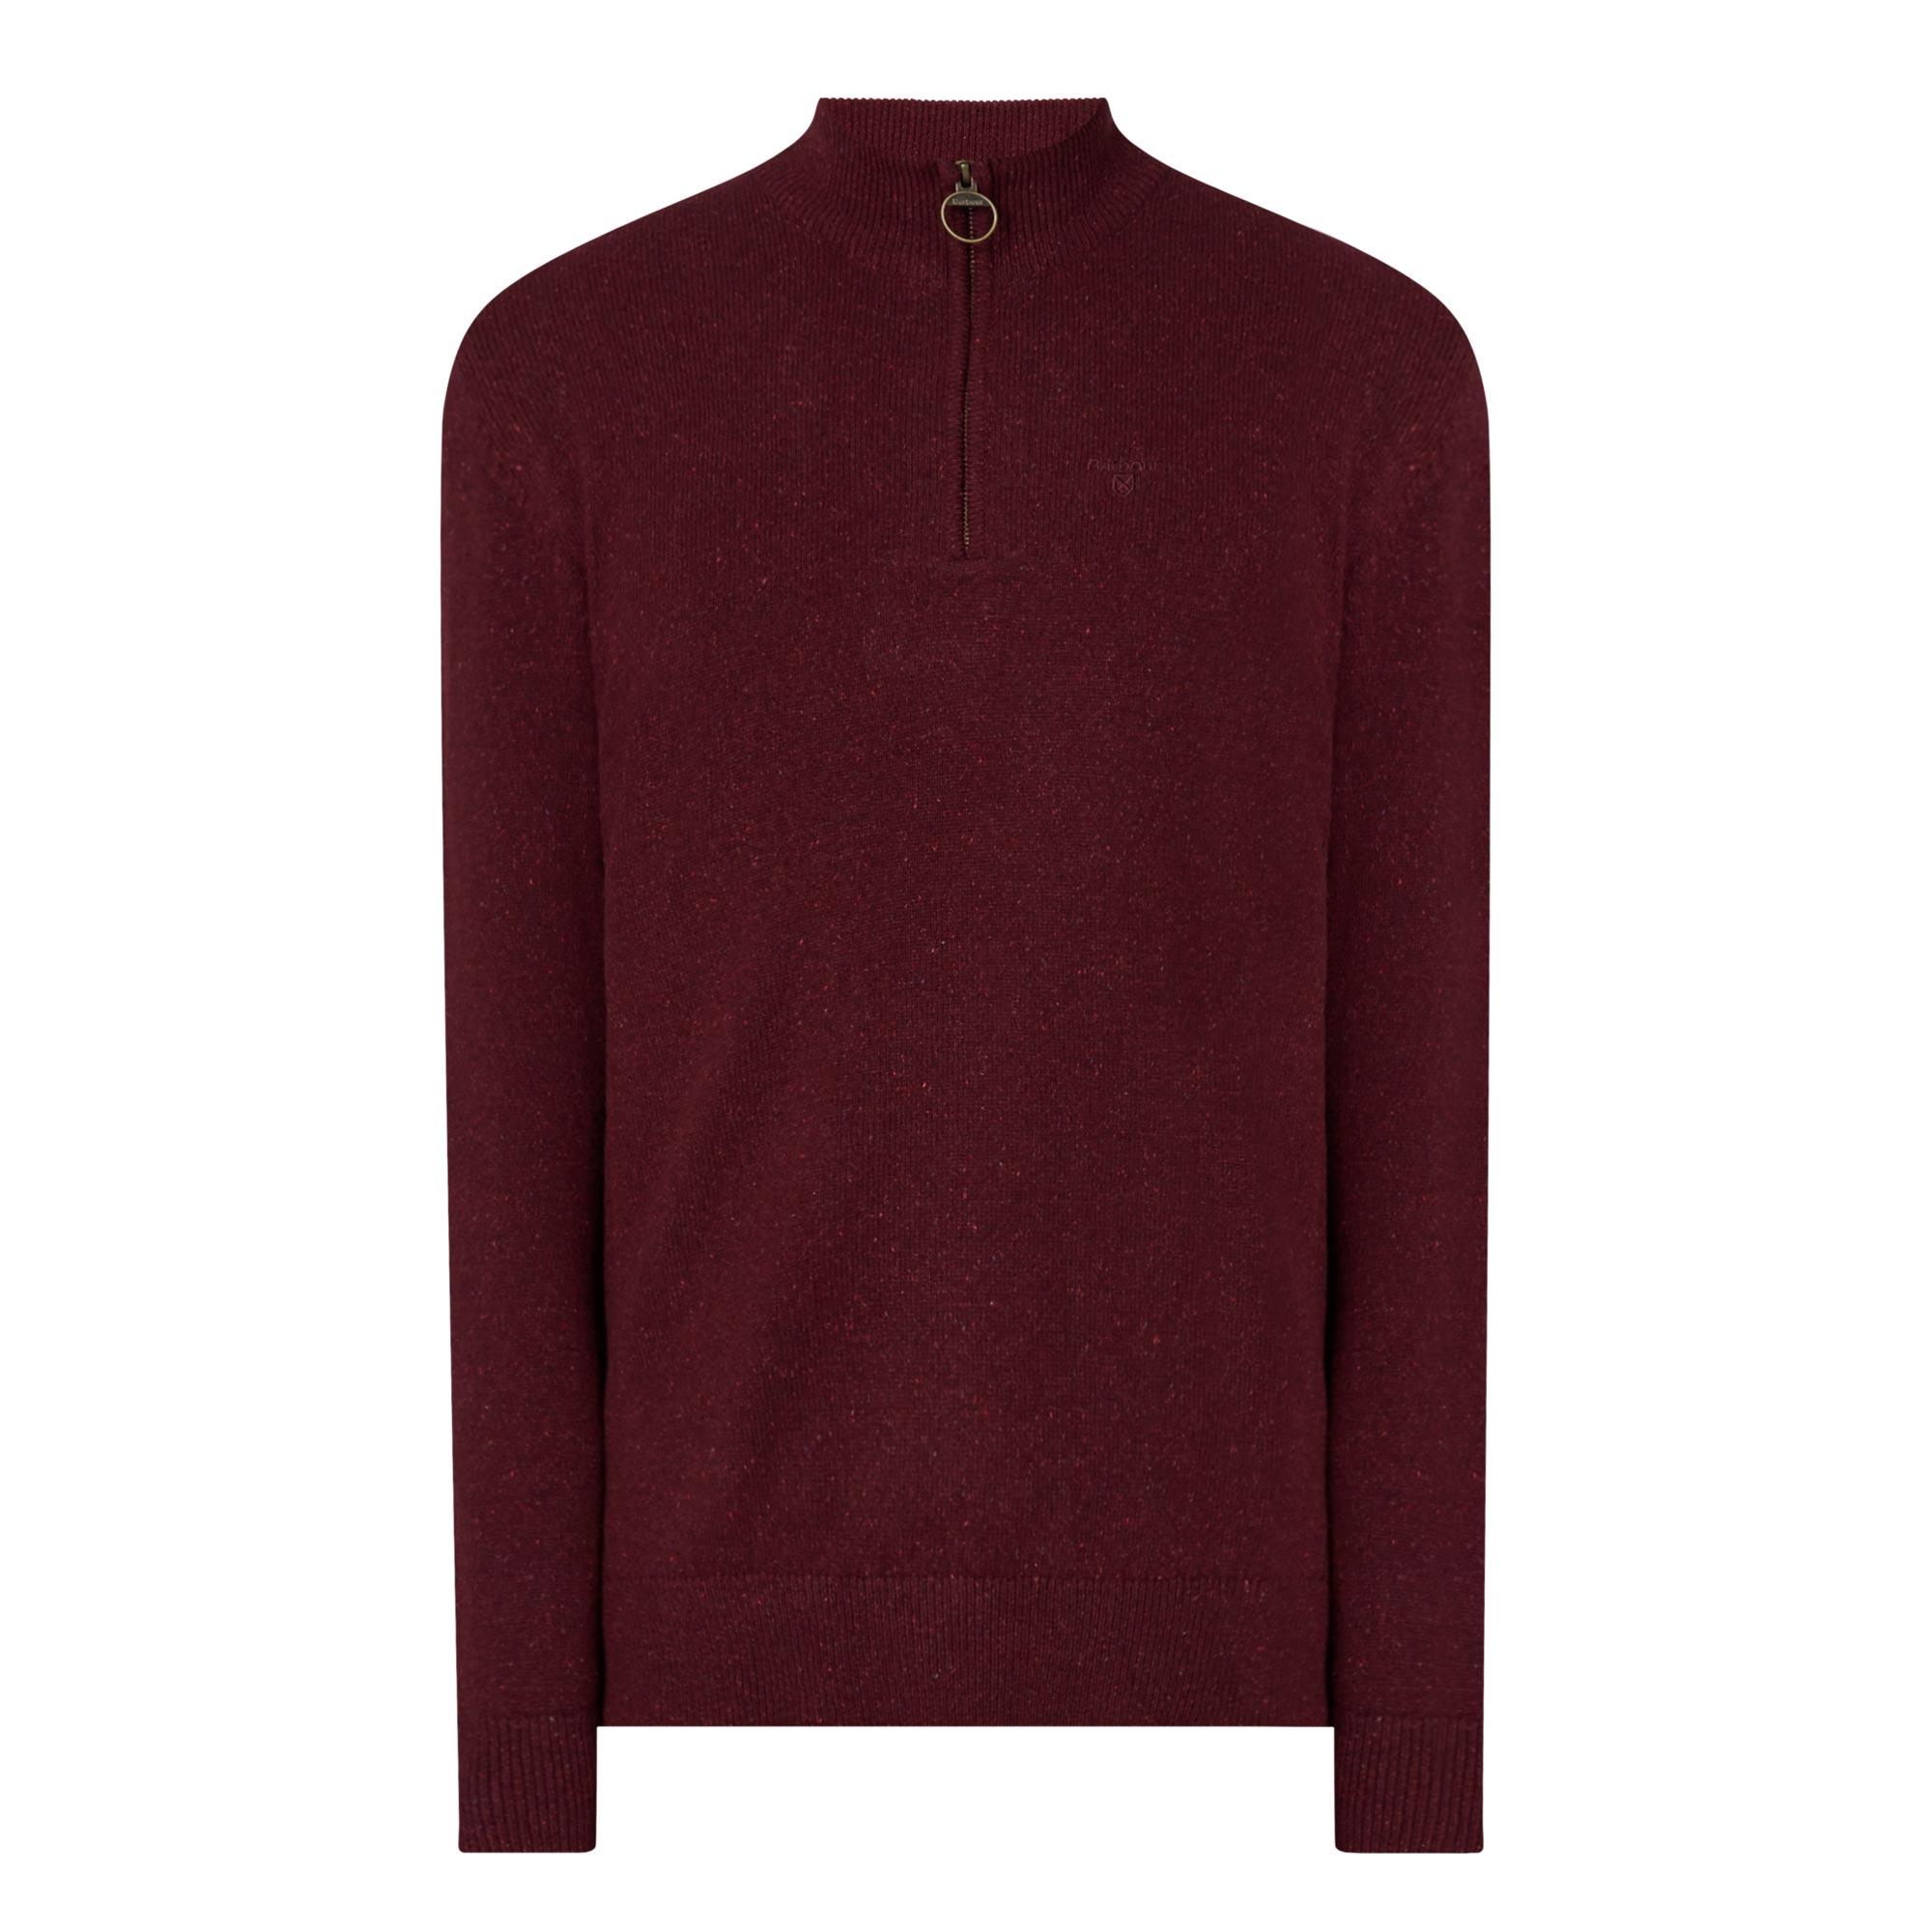 Tisbury Half-Zip Sweater